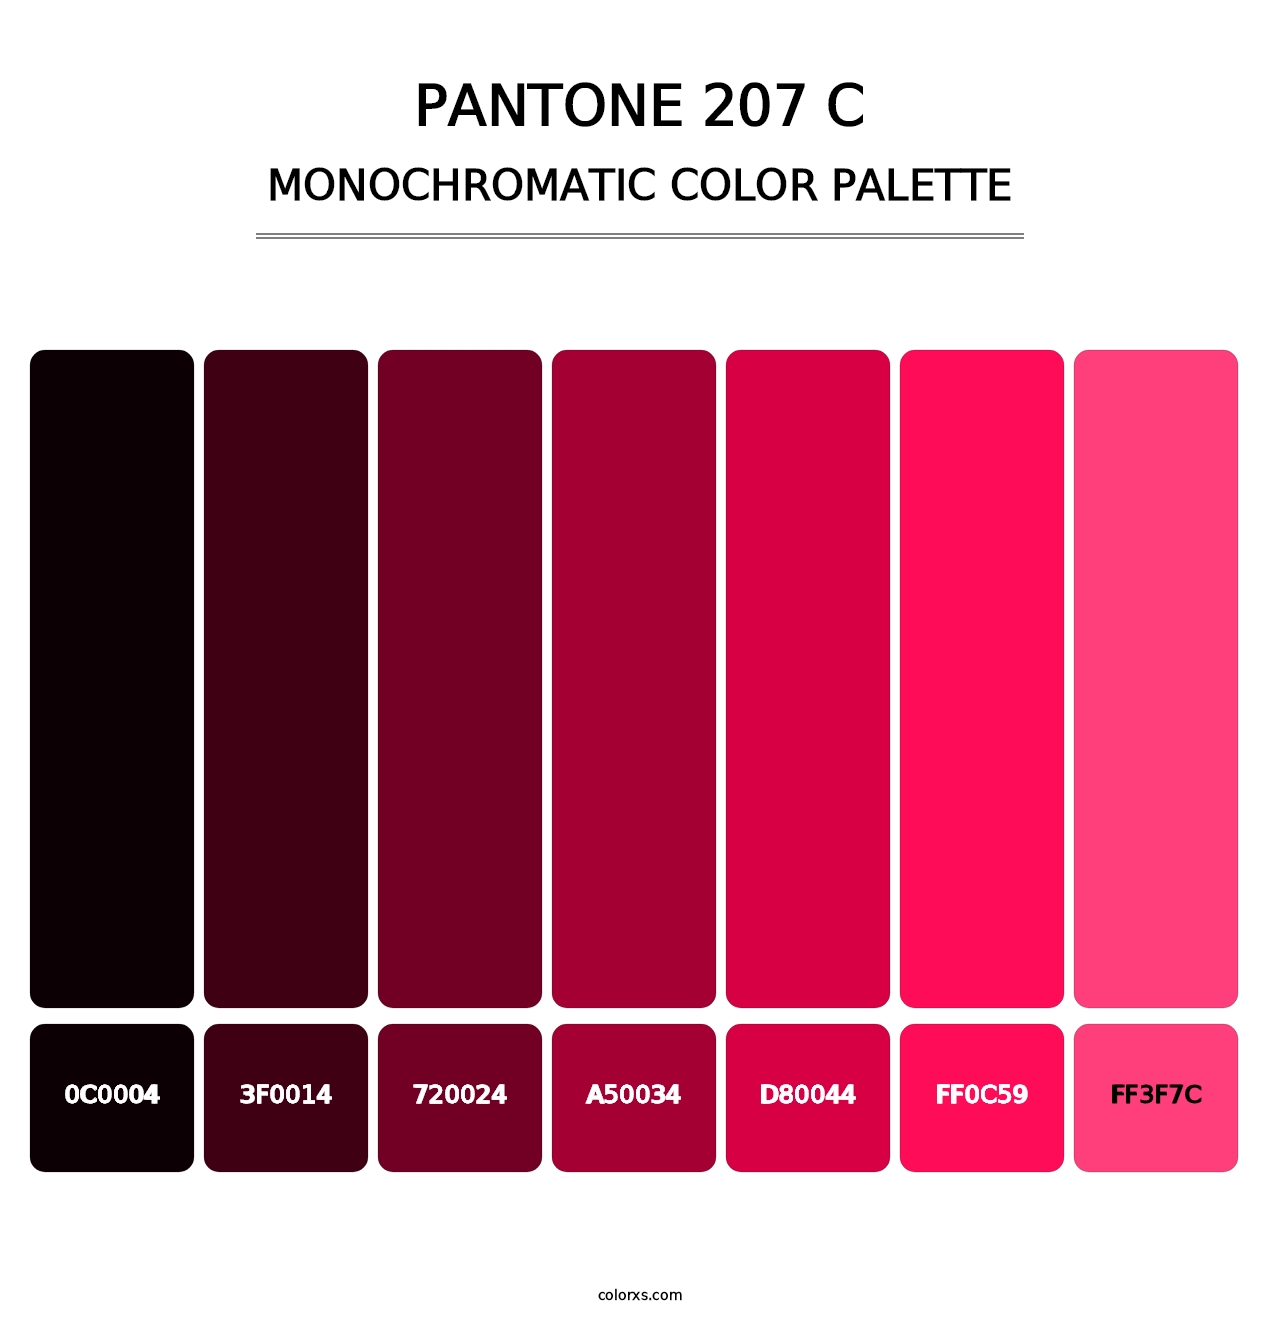 PANTONE 207 C - Monochromatic Color Palette